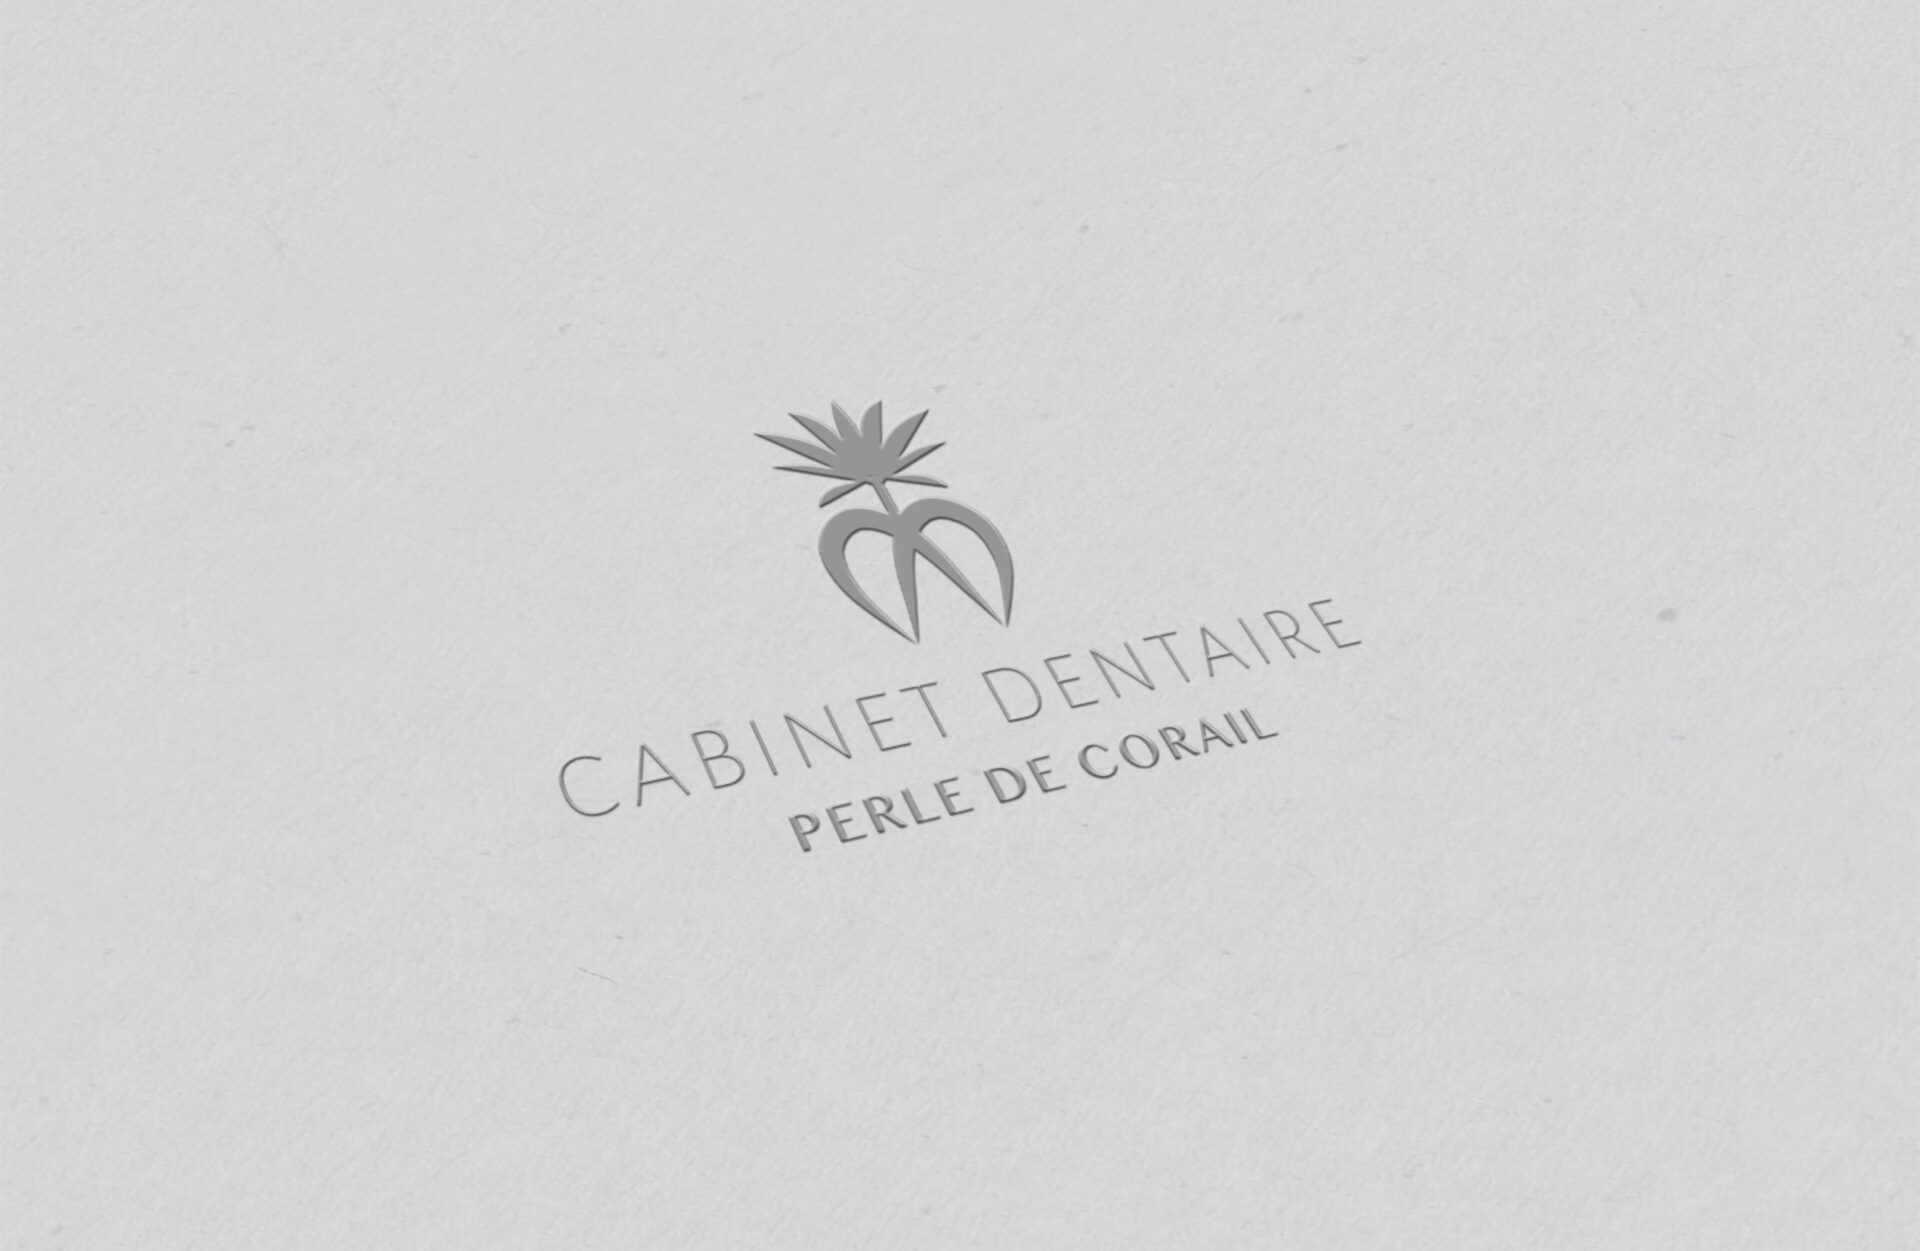 Logo créé par l'agence de communication R Numérique pour Perle de corail